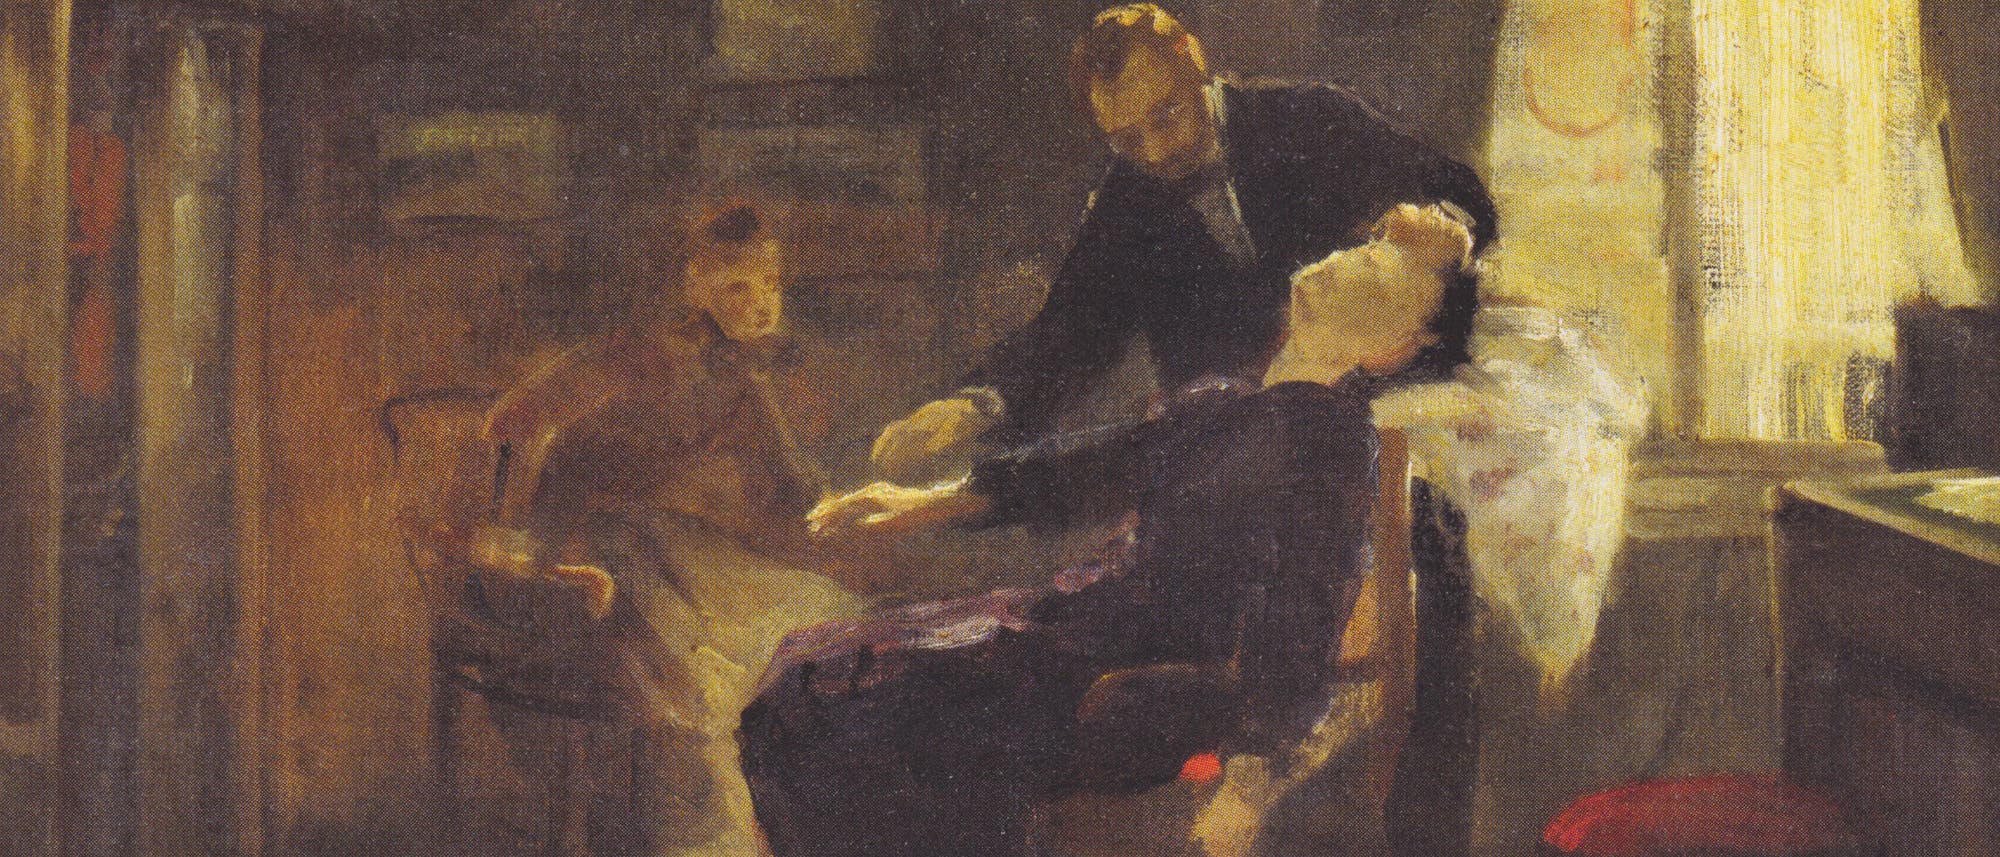 Hypnose bei Schrenck-Notzing, Gemälde von Albert von Keller, um 1885